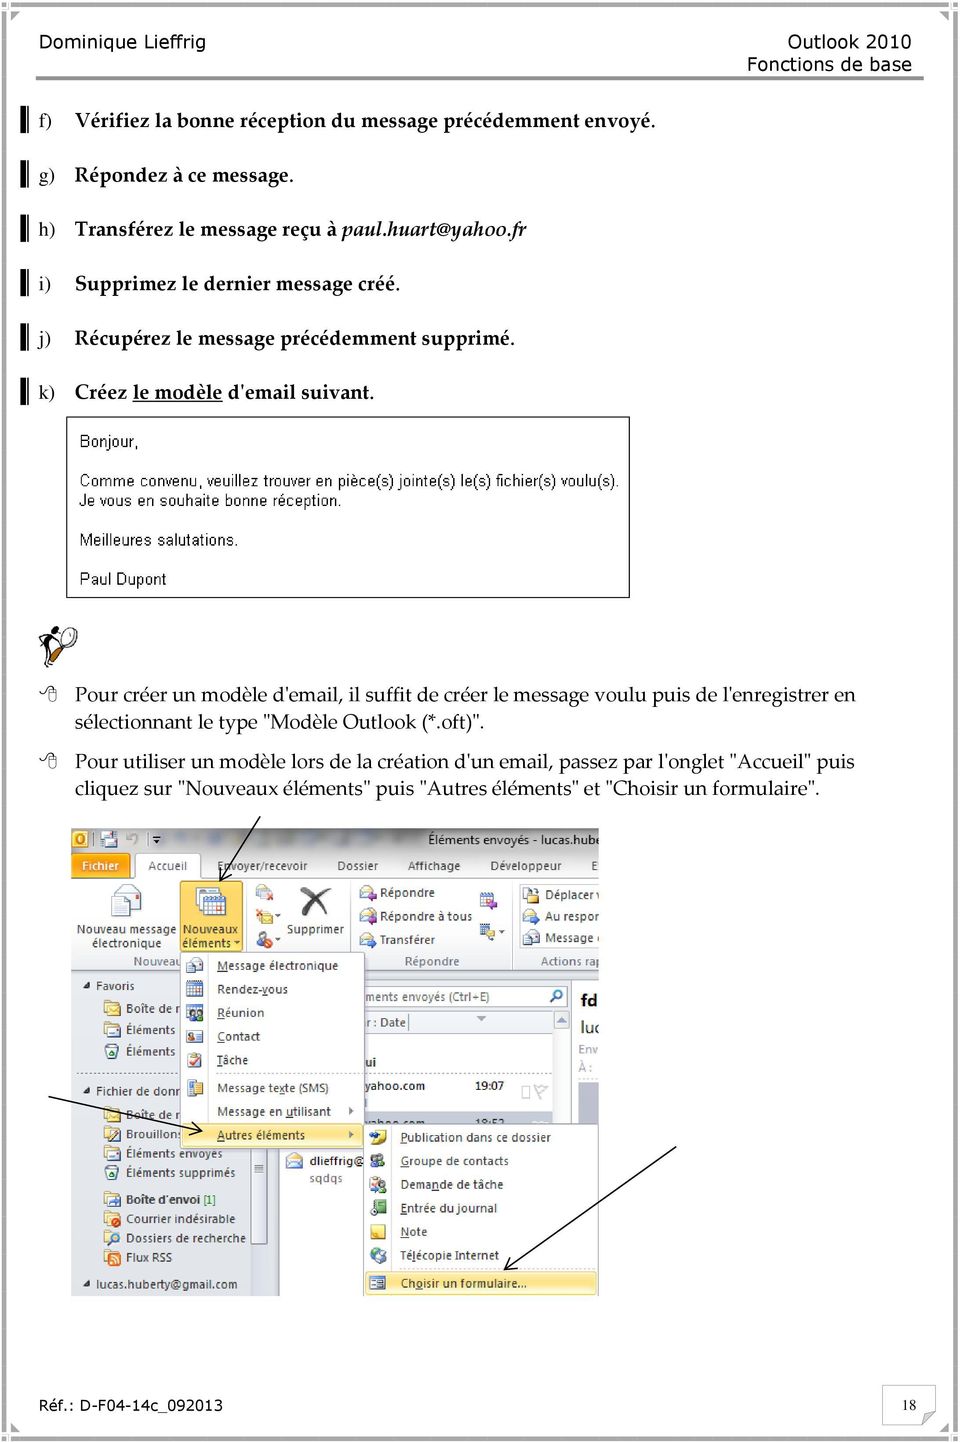 Pour créer un modèle d'email, il suffit de créer le message voulu puis de l'enregistrer en sélectionnant le type "Modèle Outlook (*.oft)".